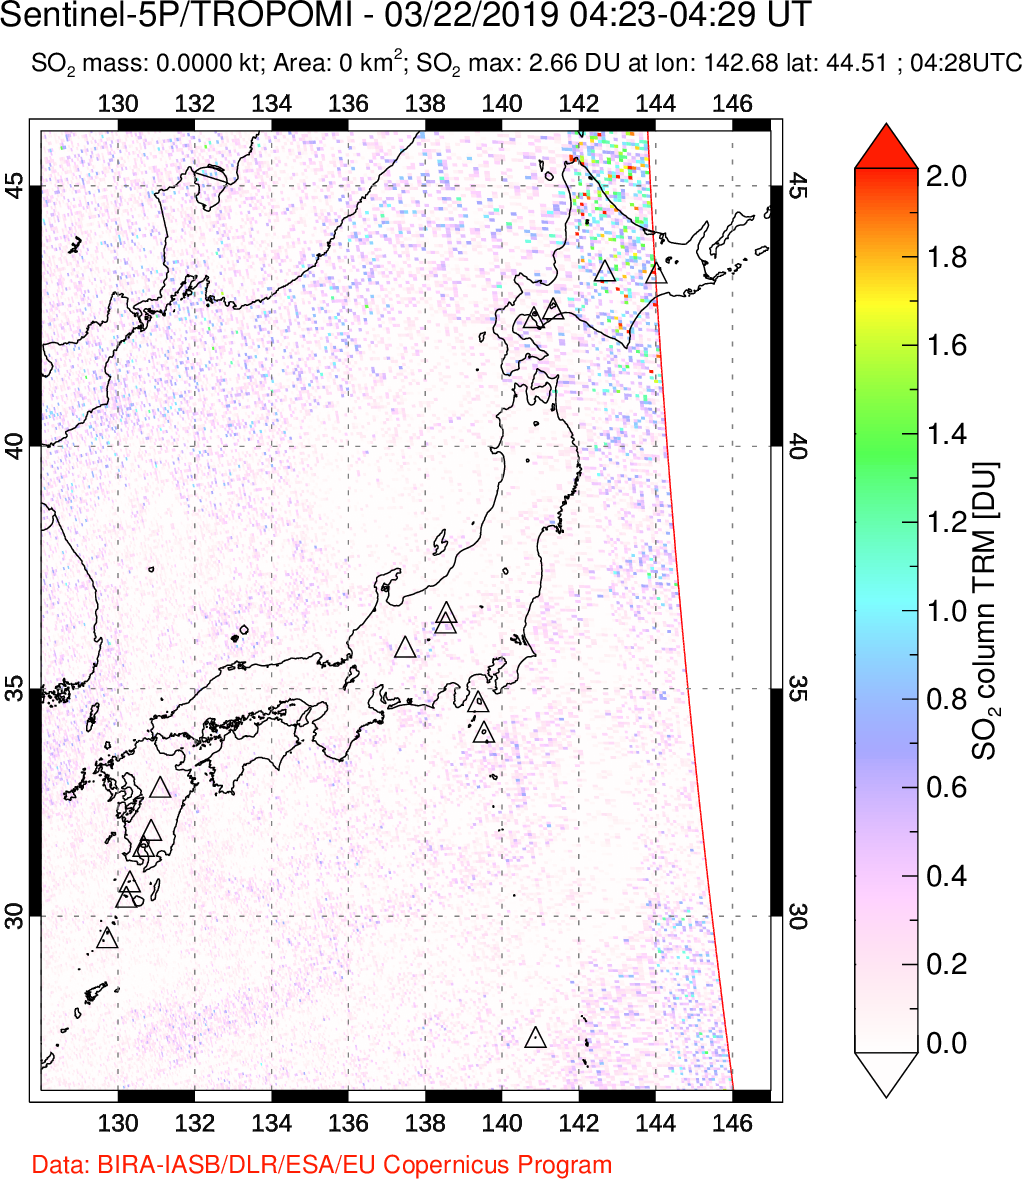 A sulfur dioxide image over Japan on Mar 22, 2019.